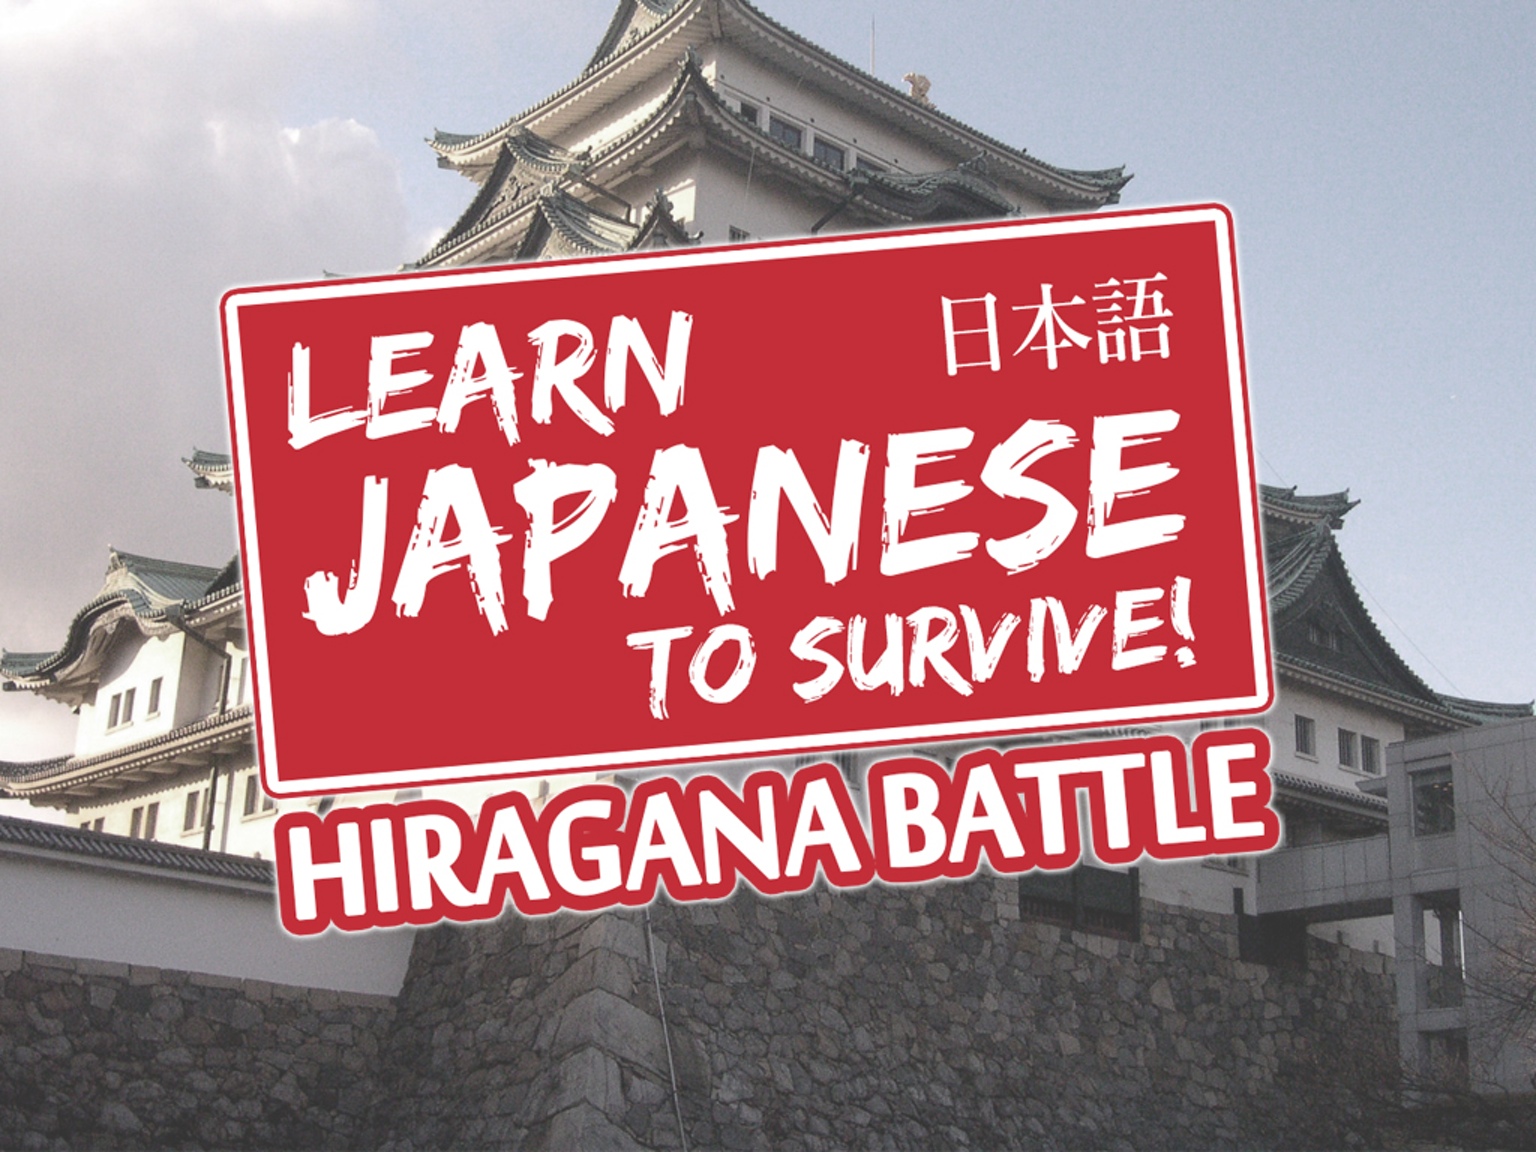 Hiragana Battle